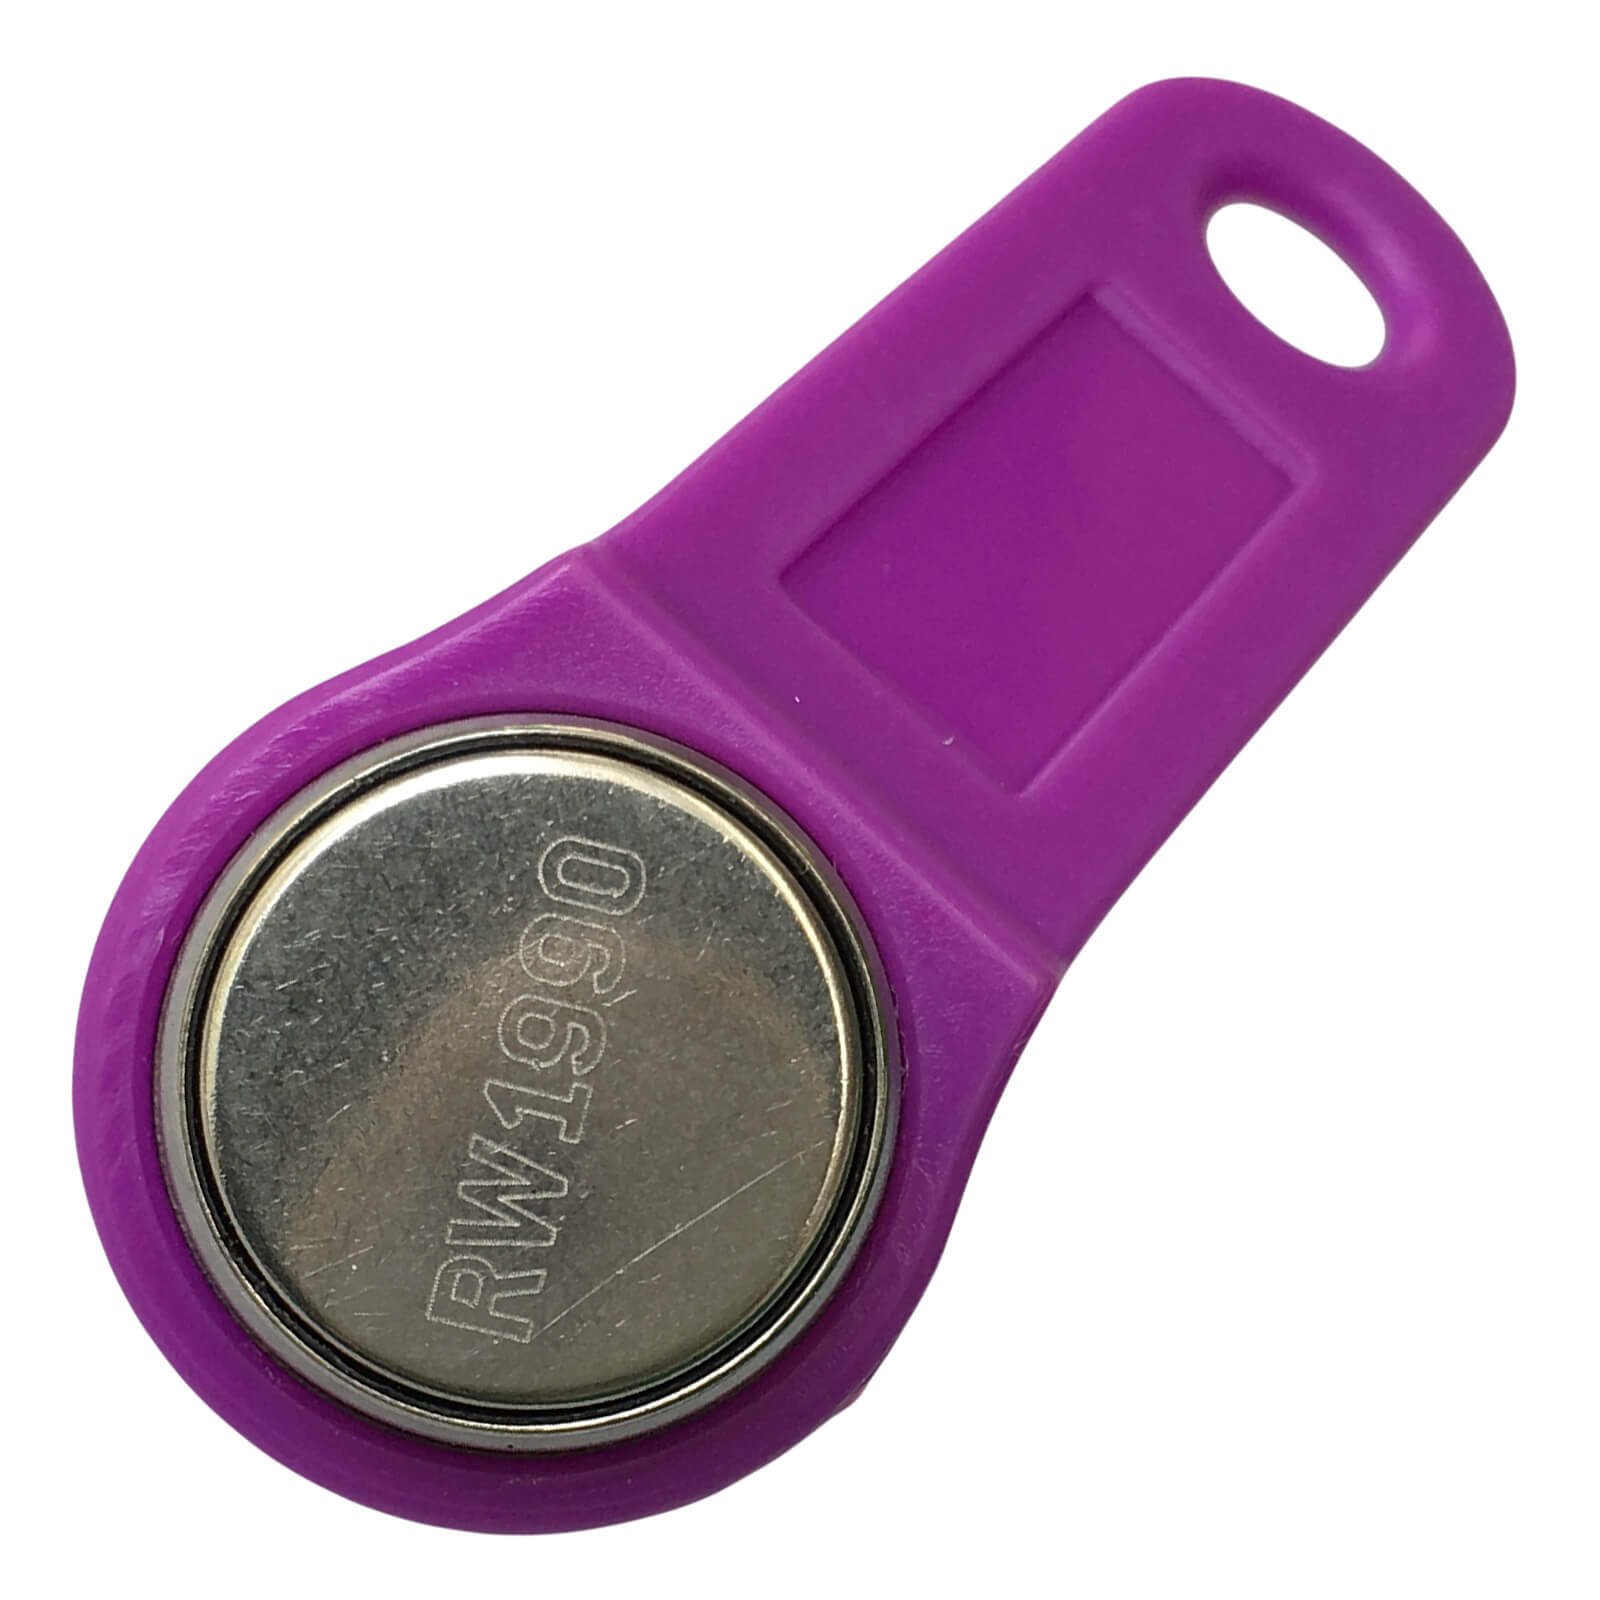 RW1990 i-Button Key with Purple Fob